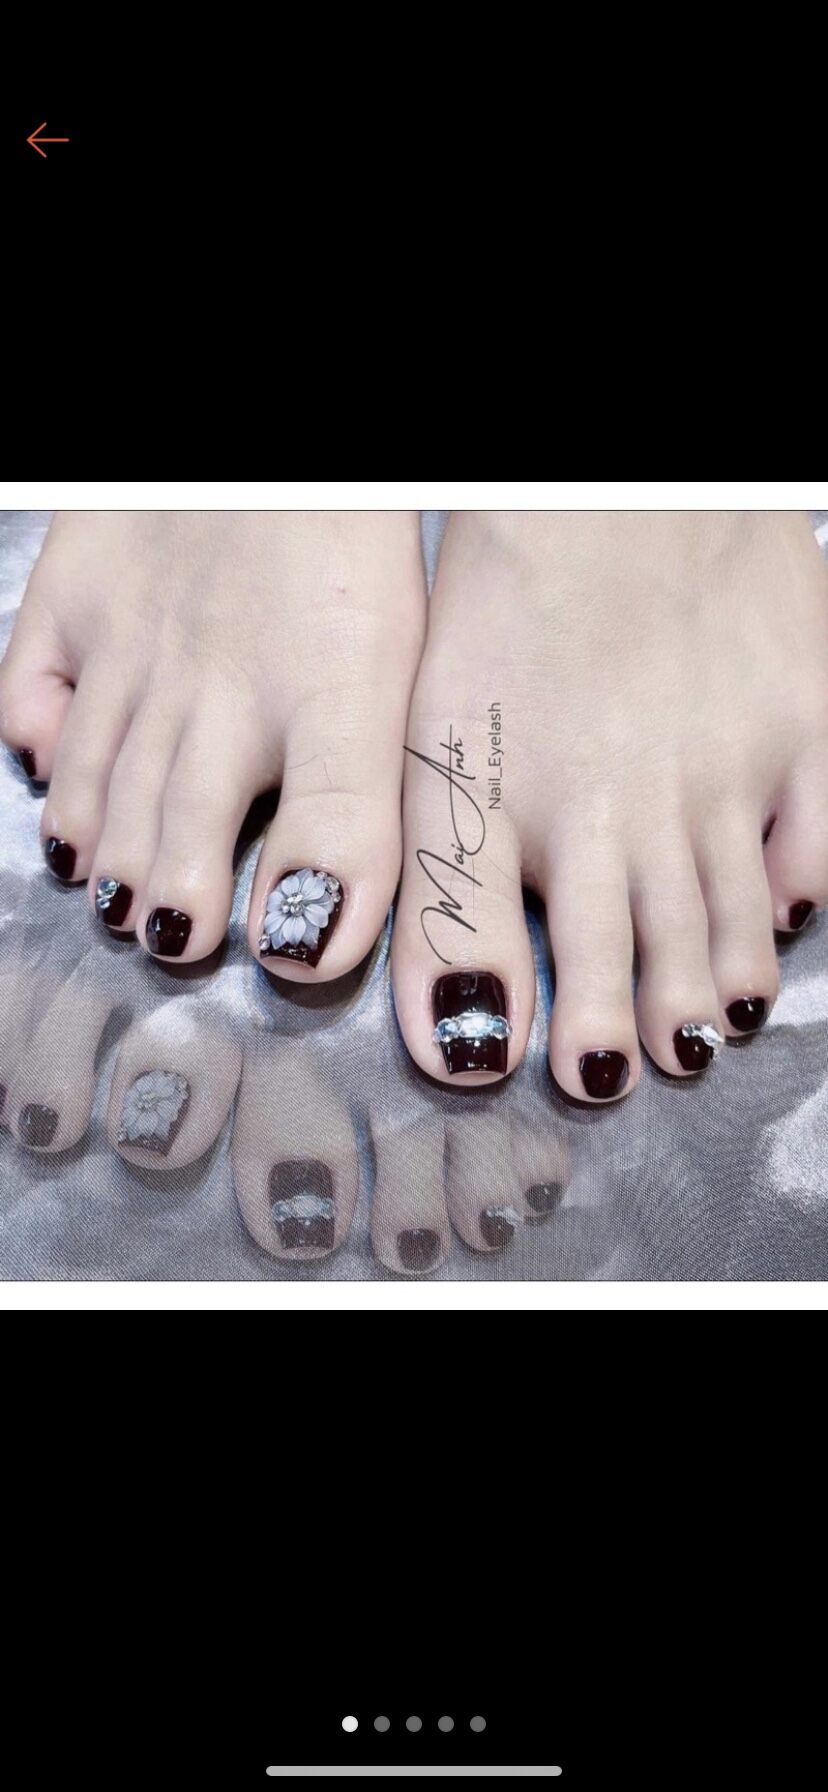 sơn móng chân màu đen bí ẩn | Black toe nails, Toe nails, Toe nail designs